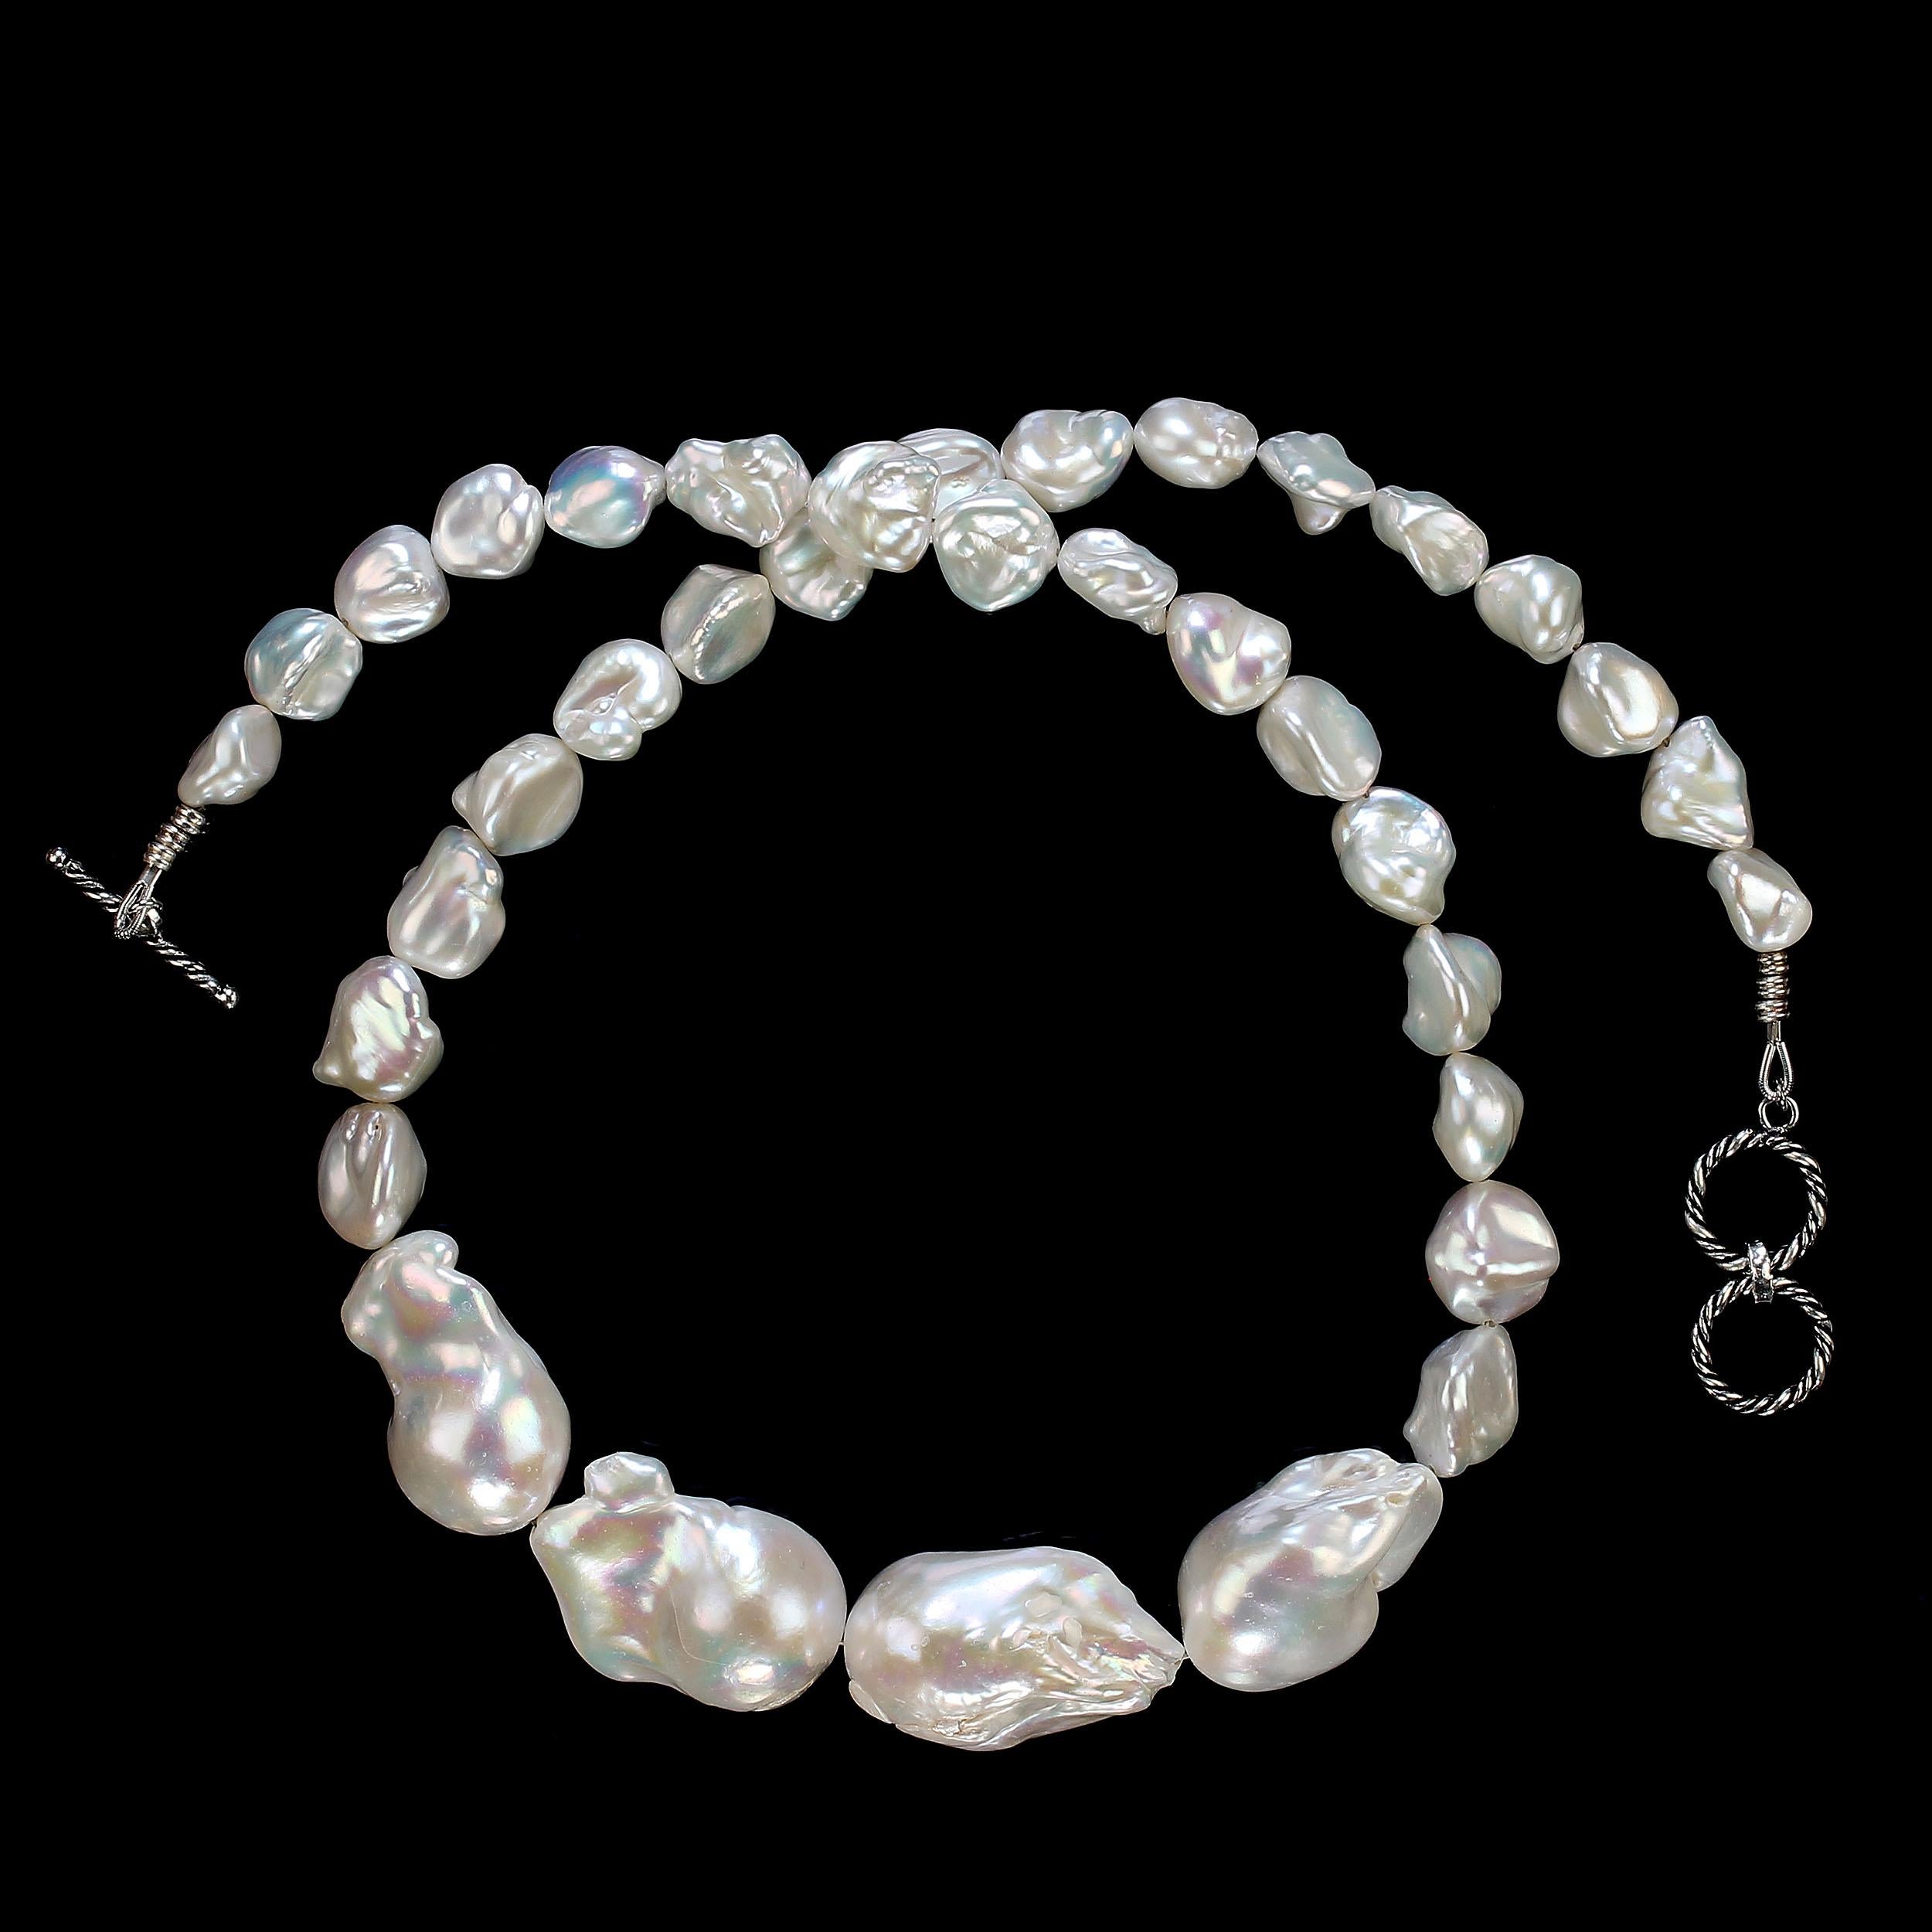 Collier de perles d'eau douce blanches de Chine, 12 x12mm, avec quatre grandes perles baroques blanches d'environ 28-30mm à l'avant du collier.  Toutes ces magnifiques perles sont irisées.  Ce collier de 23 pouces est fixé à l'aide d'un fermoir à